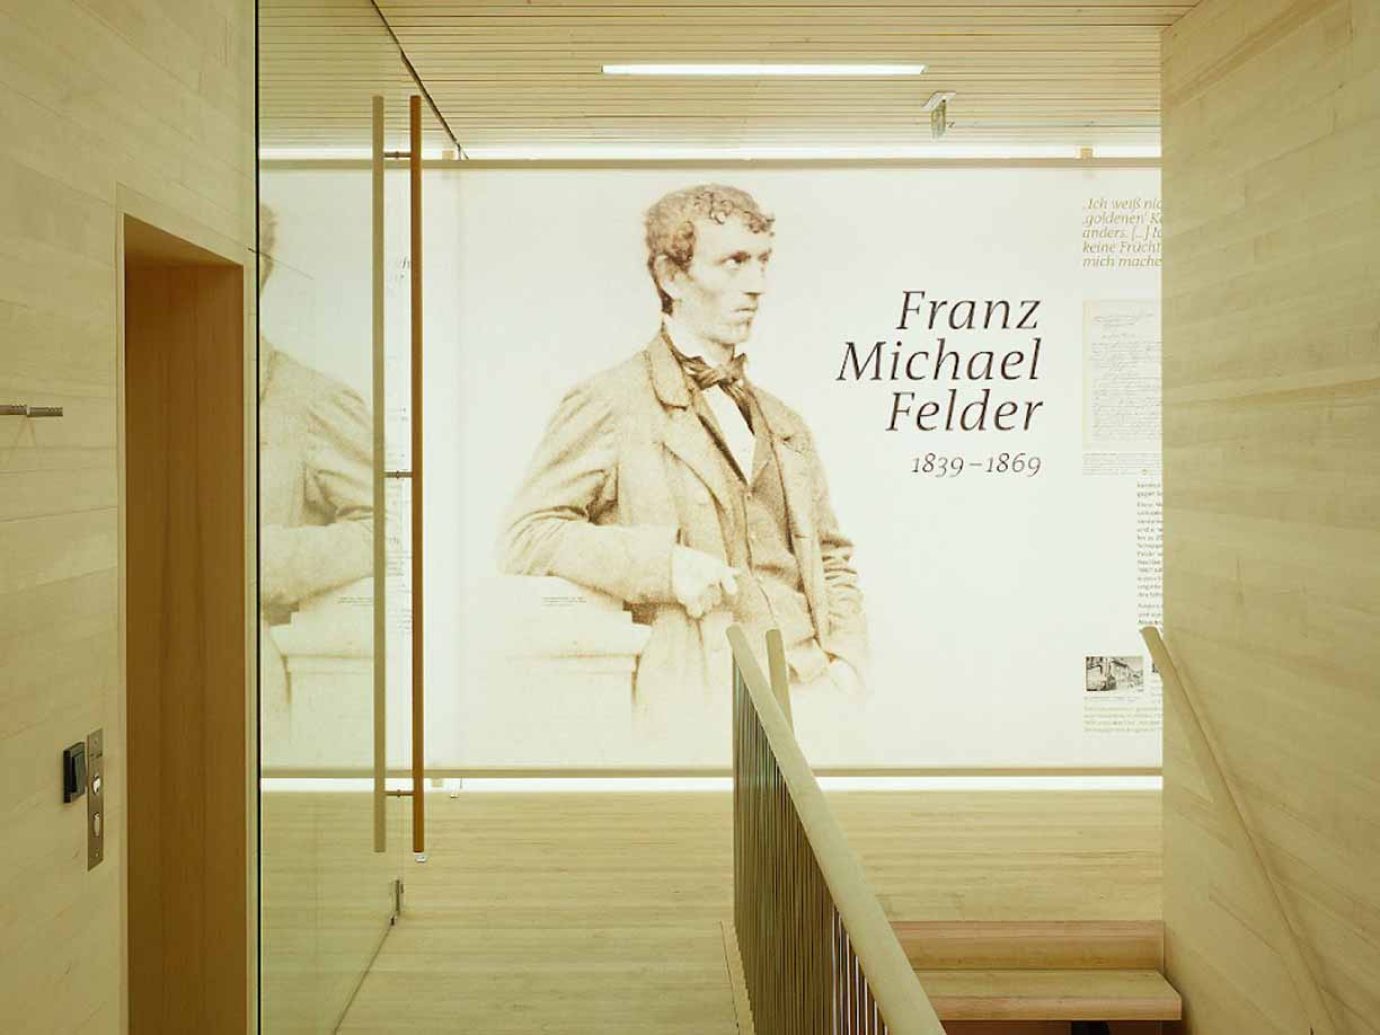 Feldermuseum von innen mit Franz Michael Felder Foto auf Wand